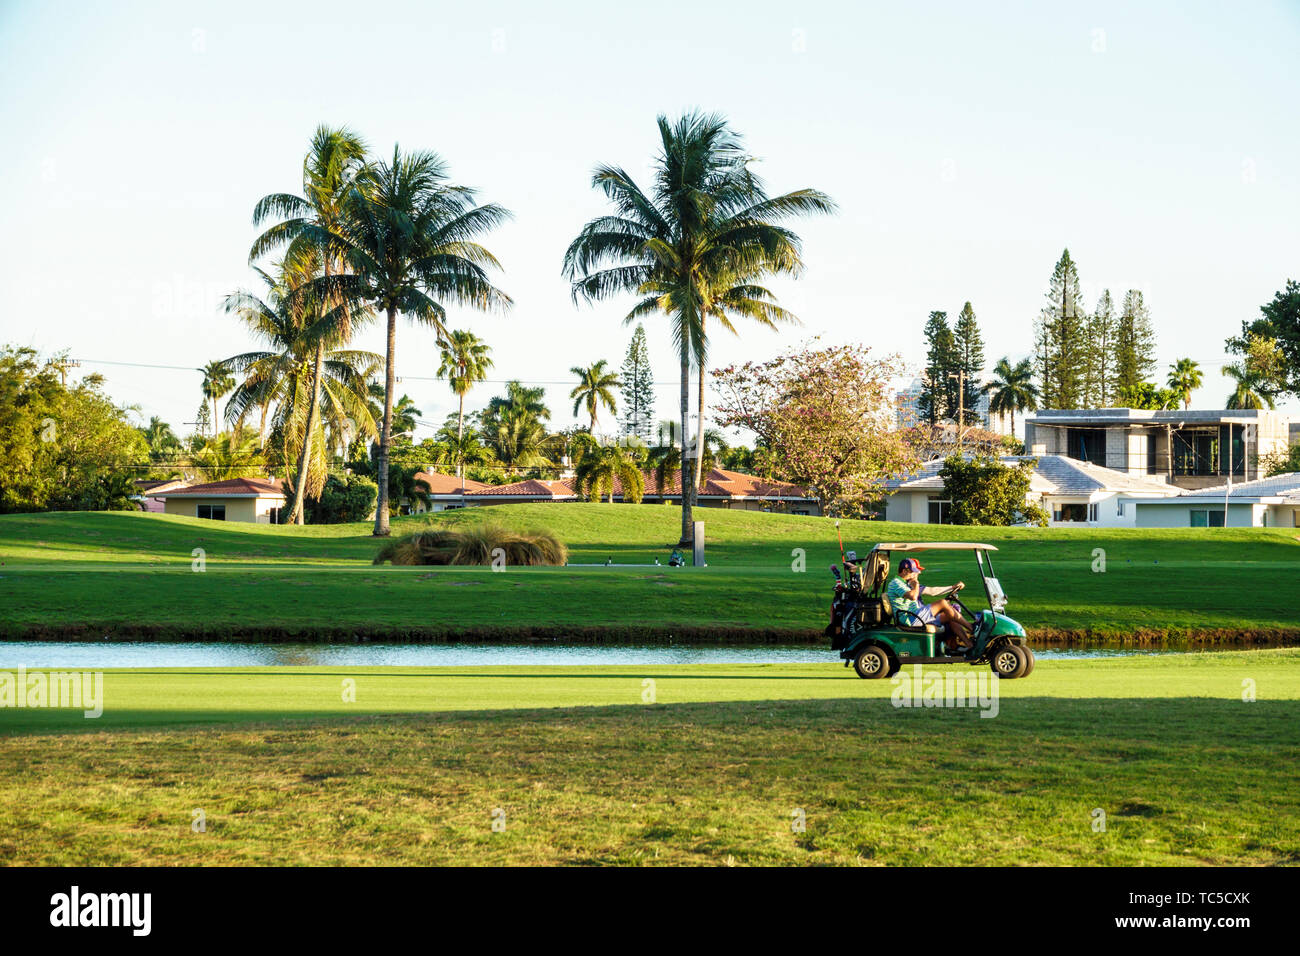 Miami Beach Florida, Normandy Shores public Golf Club, homme hommes, golfeur, voiturette électrique, palmiers, FL190331005 Banque D'Images